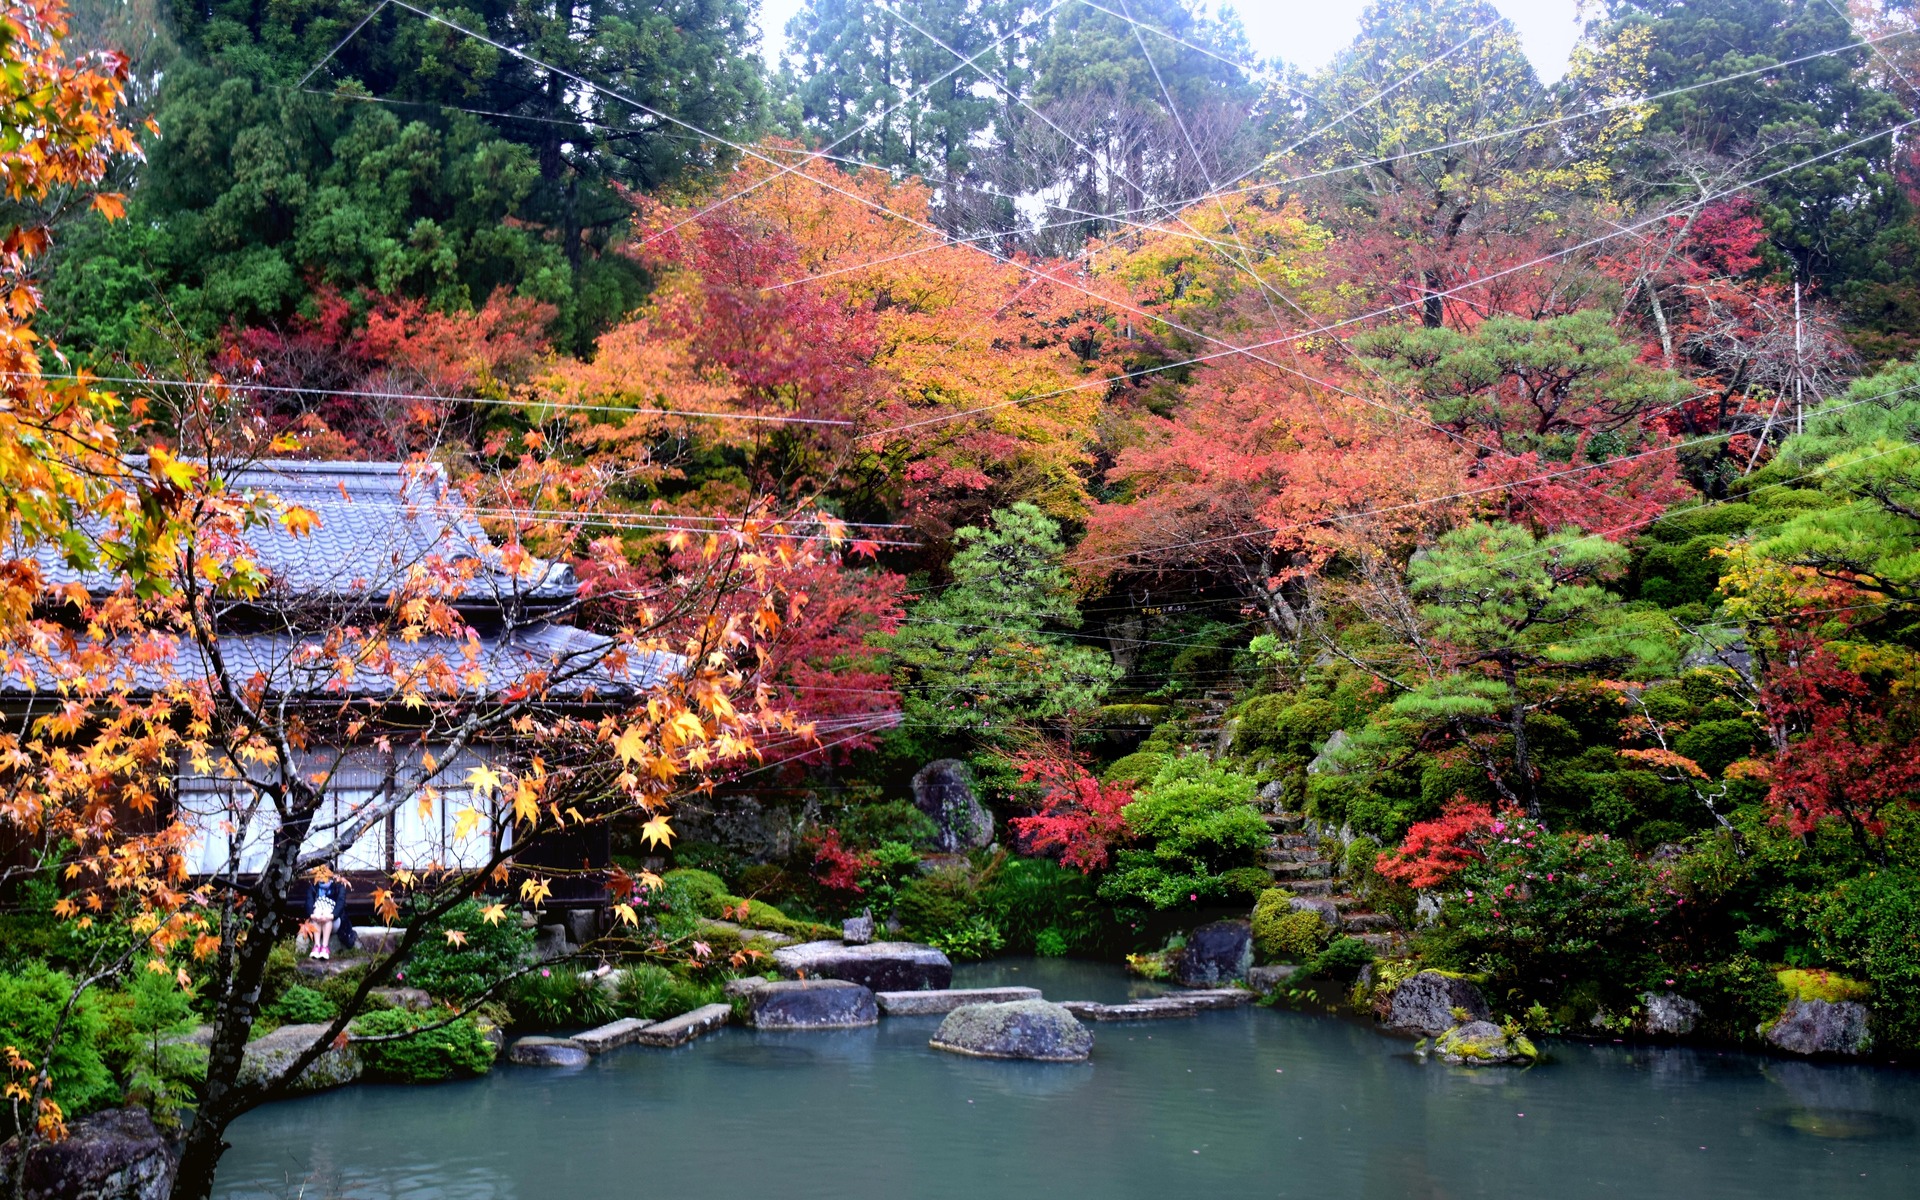 日本の風景 湖東三山 百済寺の紅葉 5 壁紙19x10 壁紙館